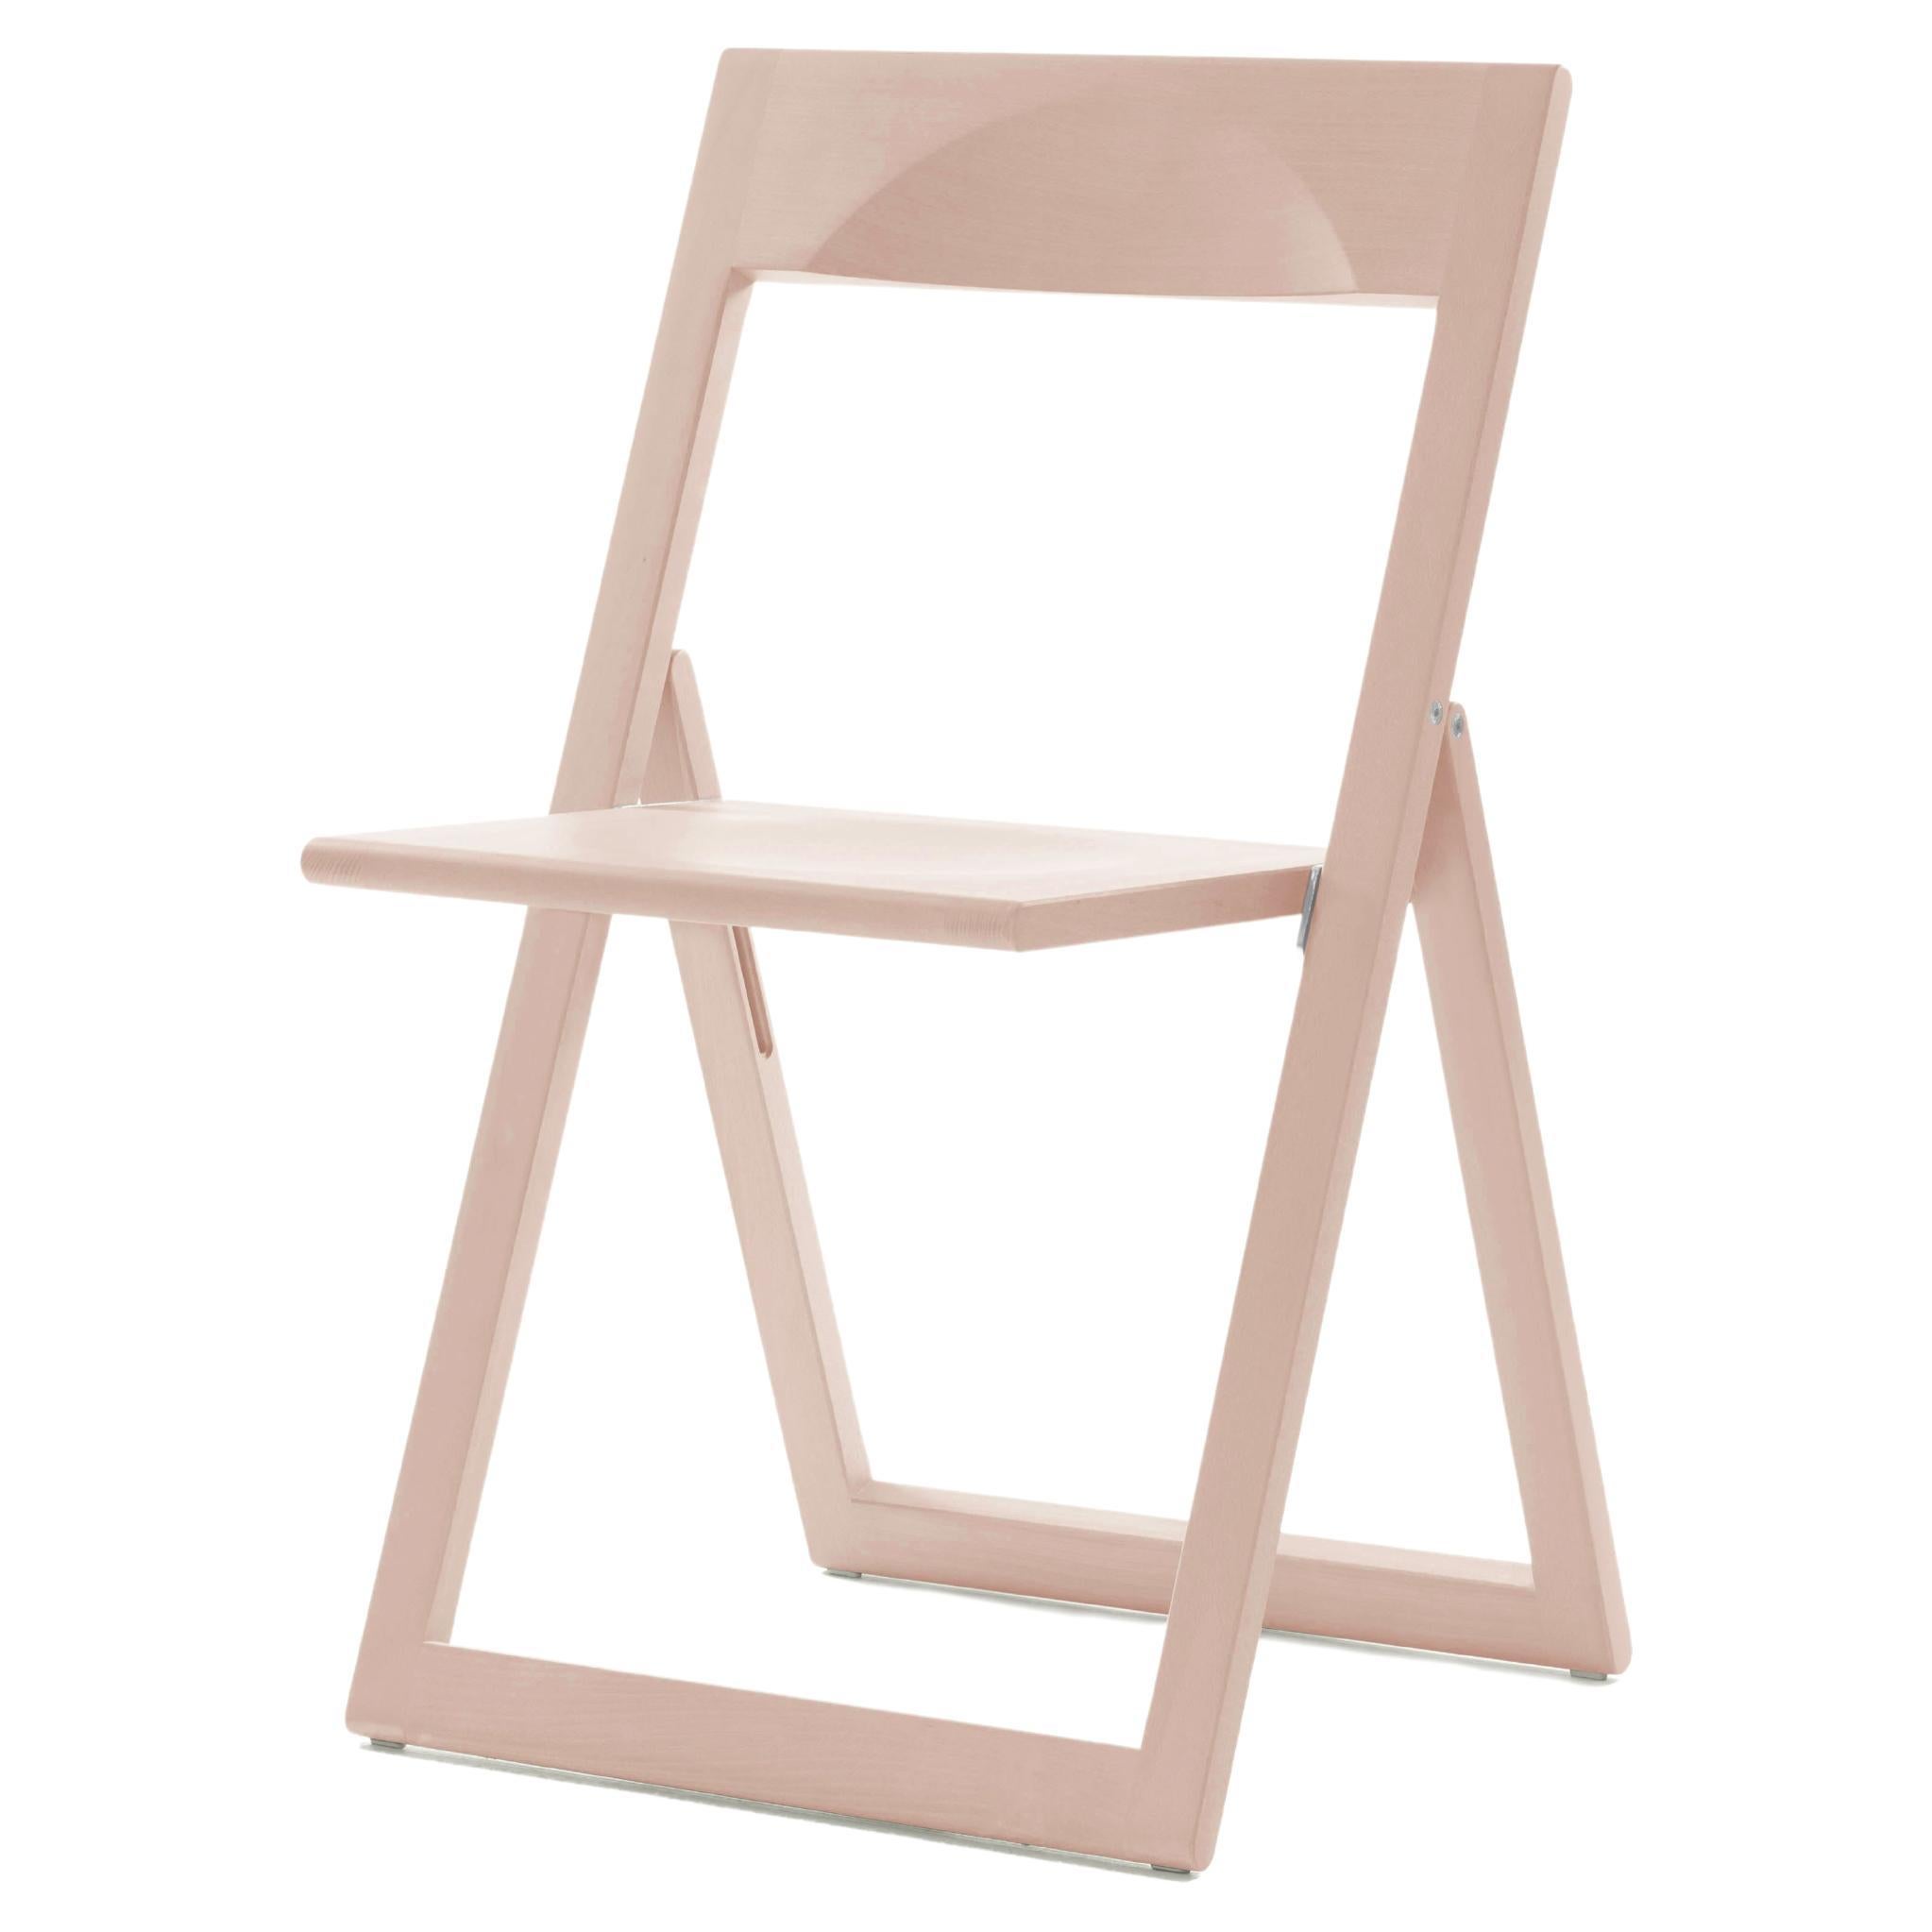 Set of 2 Aviva Folding Chair by Marc Berthier for MAGIS For Sale